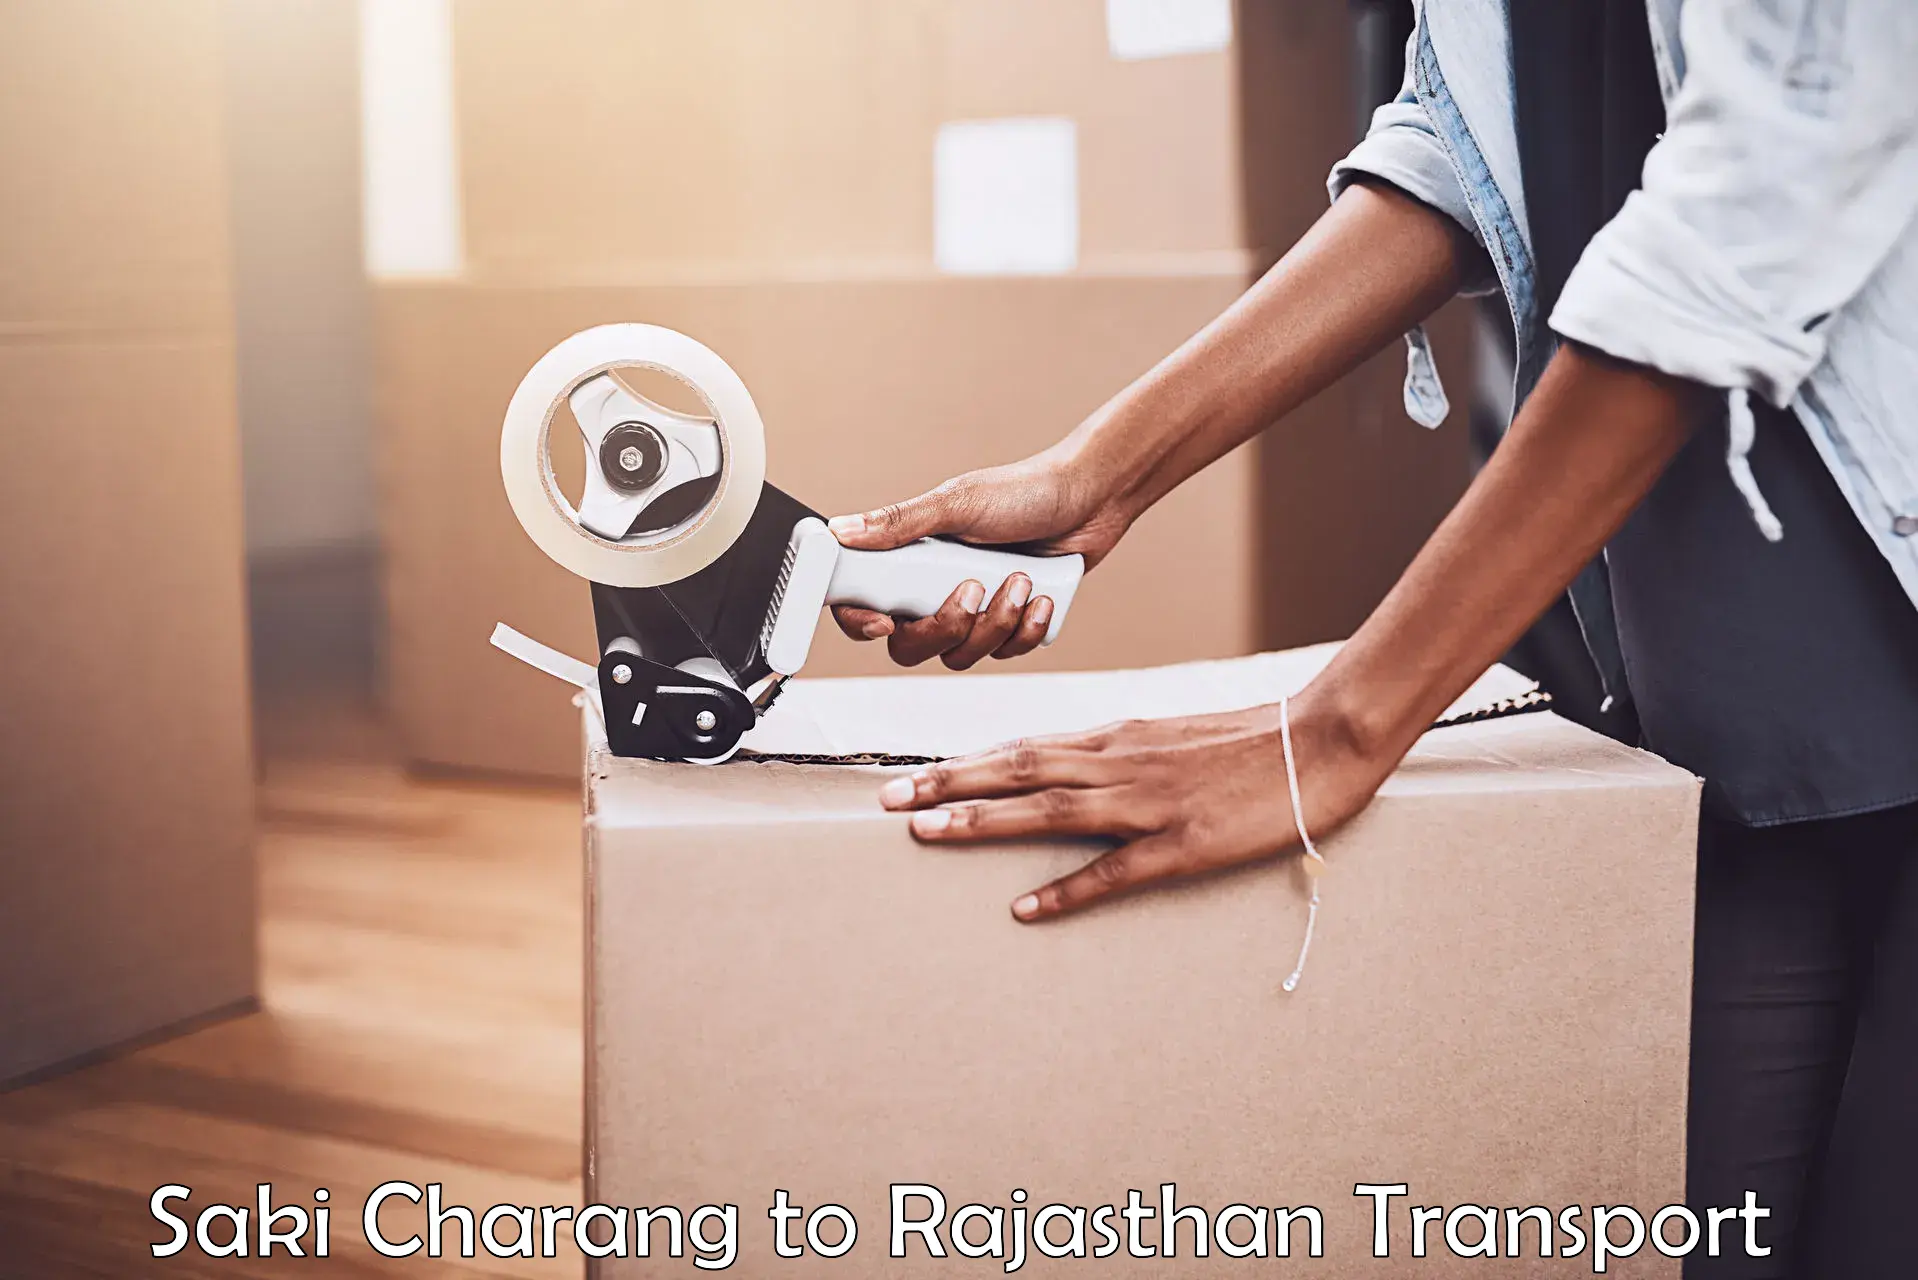 Cargo transport services Saki Charang to Rajasthan